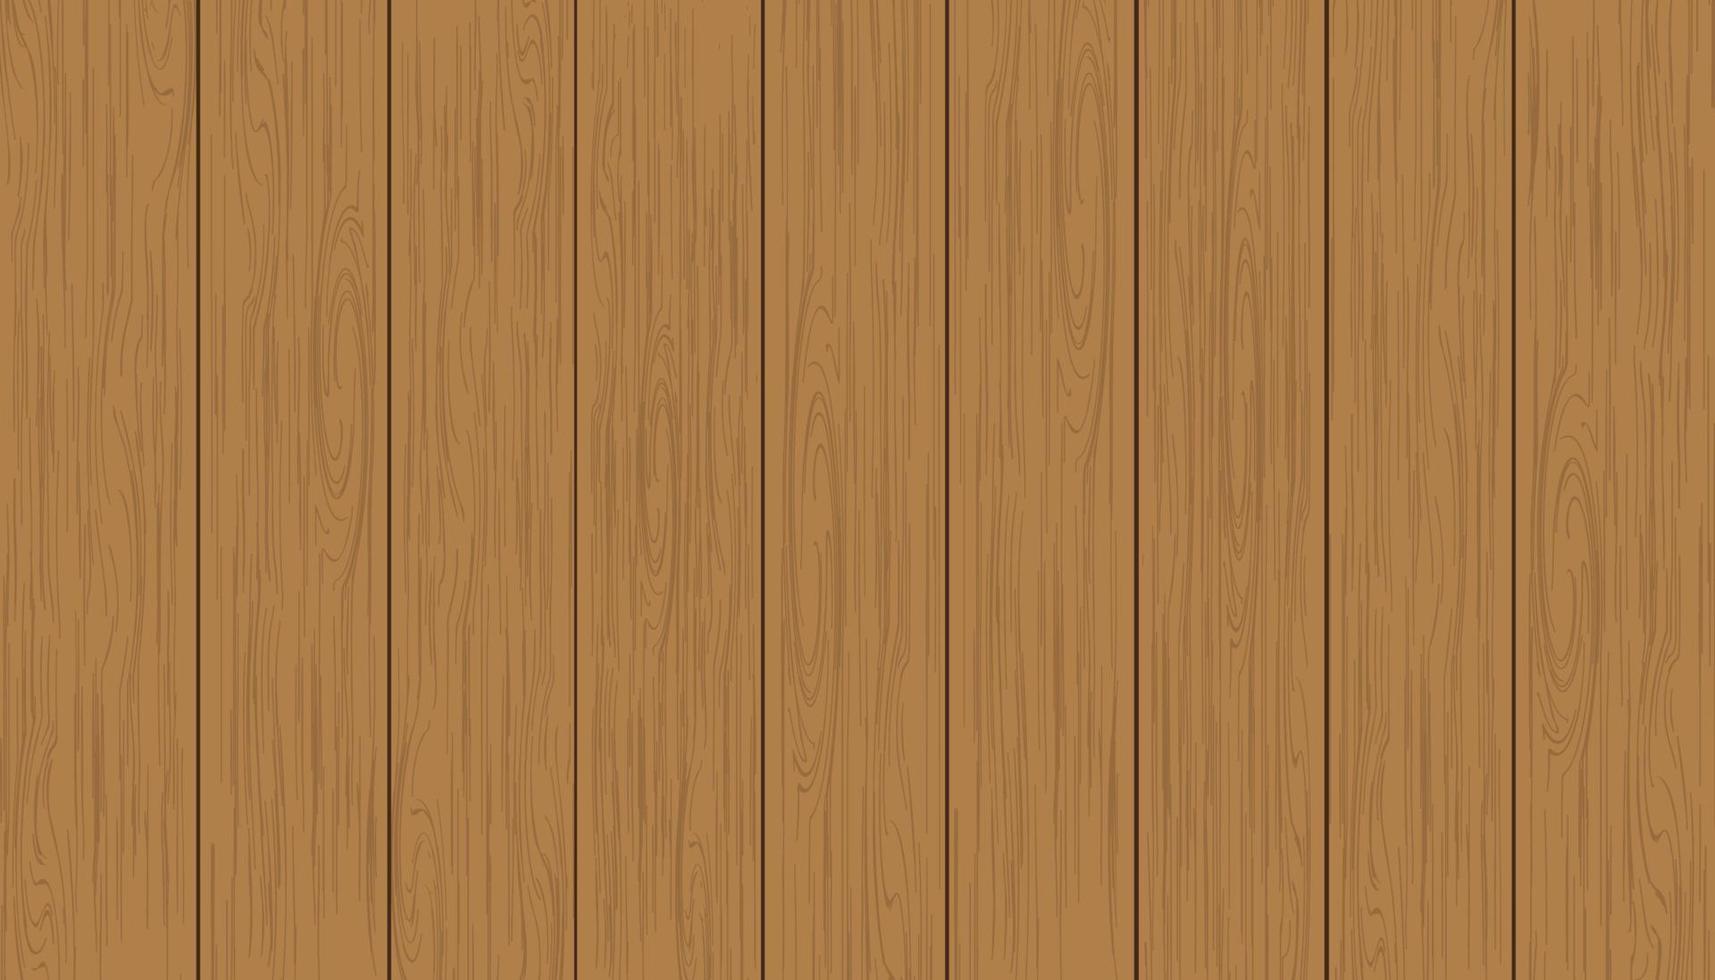 fondo de textura de madera marrón, panel de madera con un patrón abstracto, vista superior de la mesa de ilustración vectorial de la superficie del suelo de madera dura, telón de fondo de madera de madera 3d bueno para el fondo publicitario vector